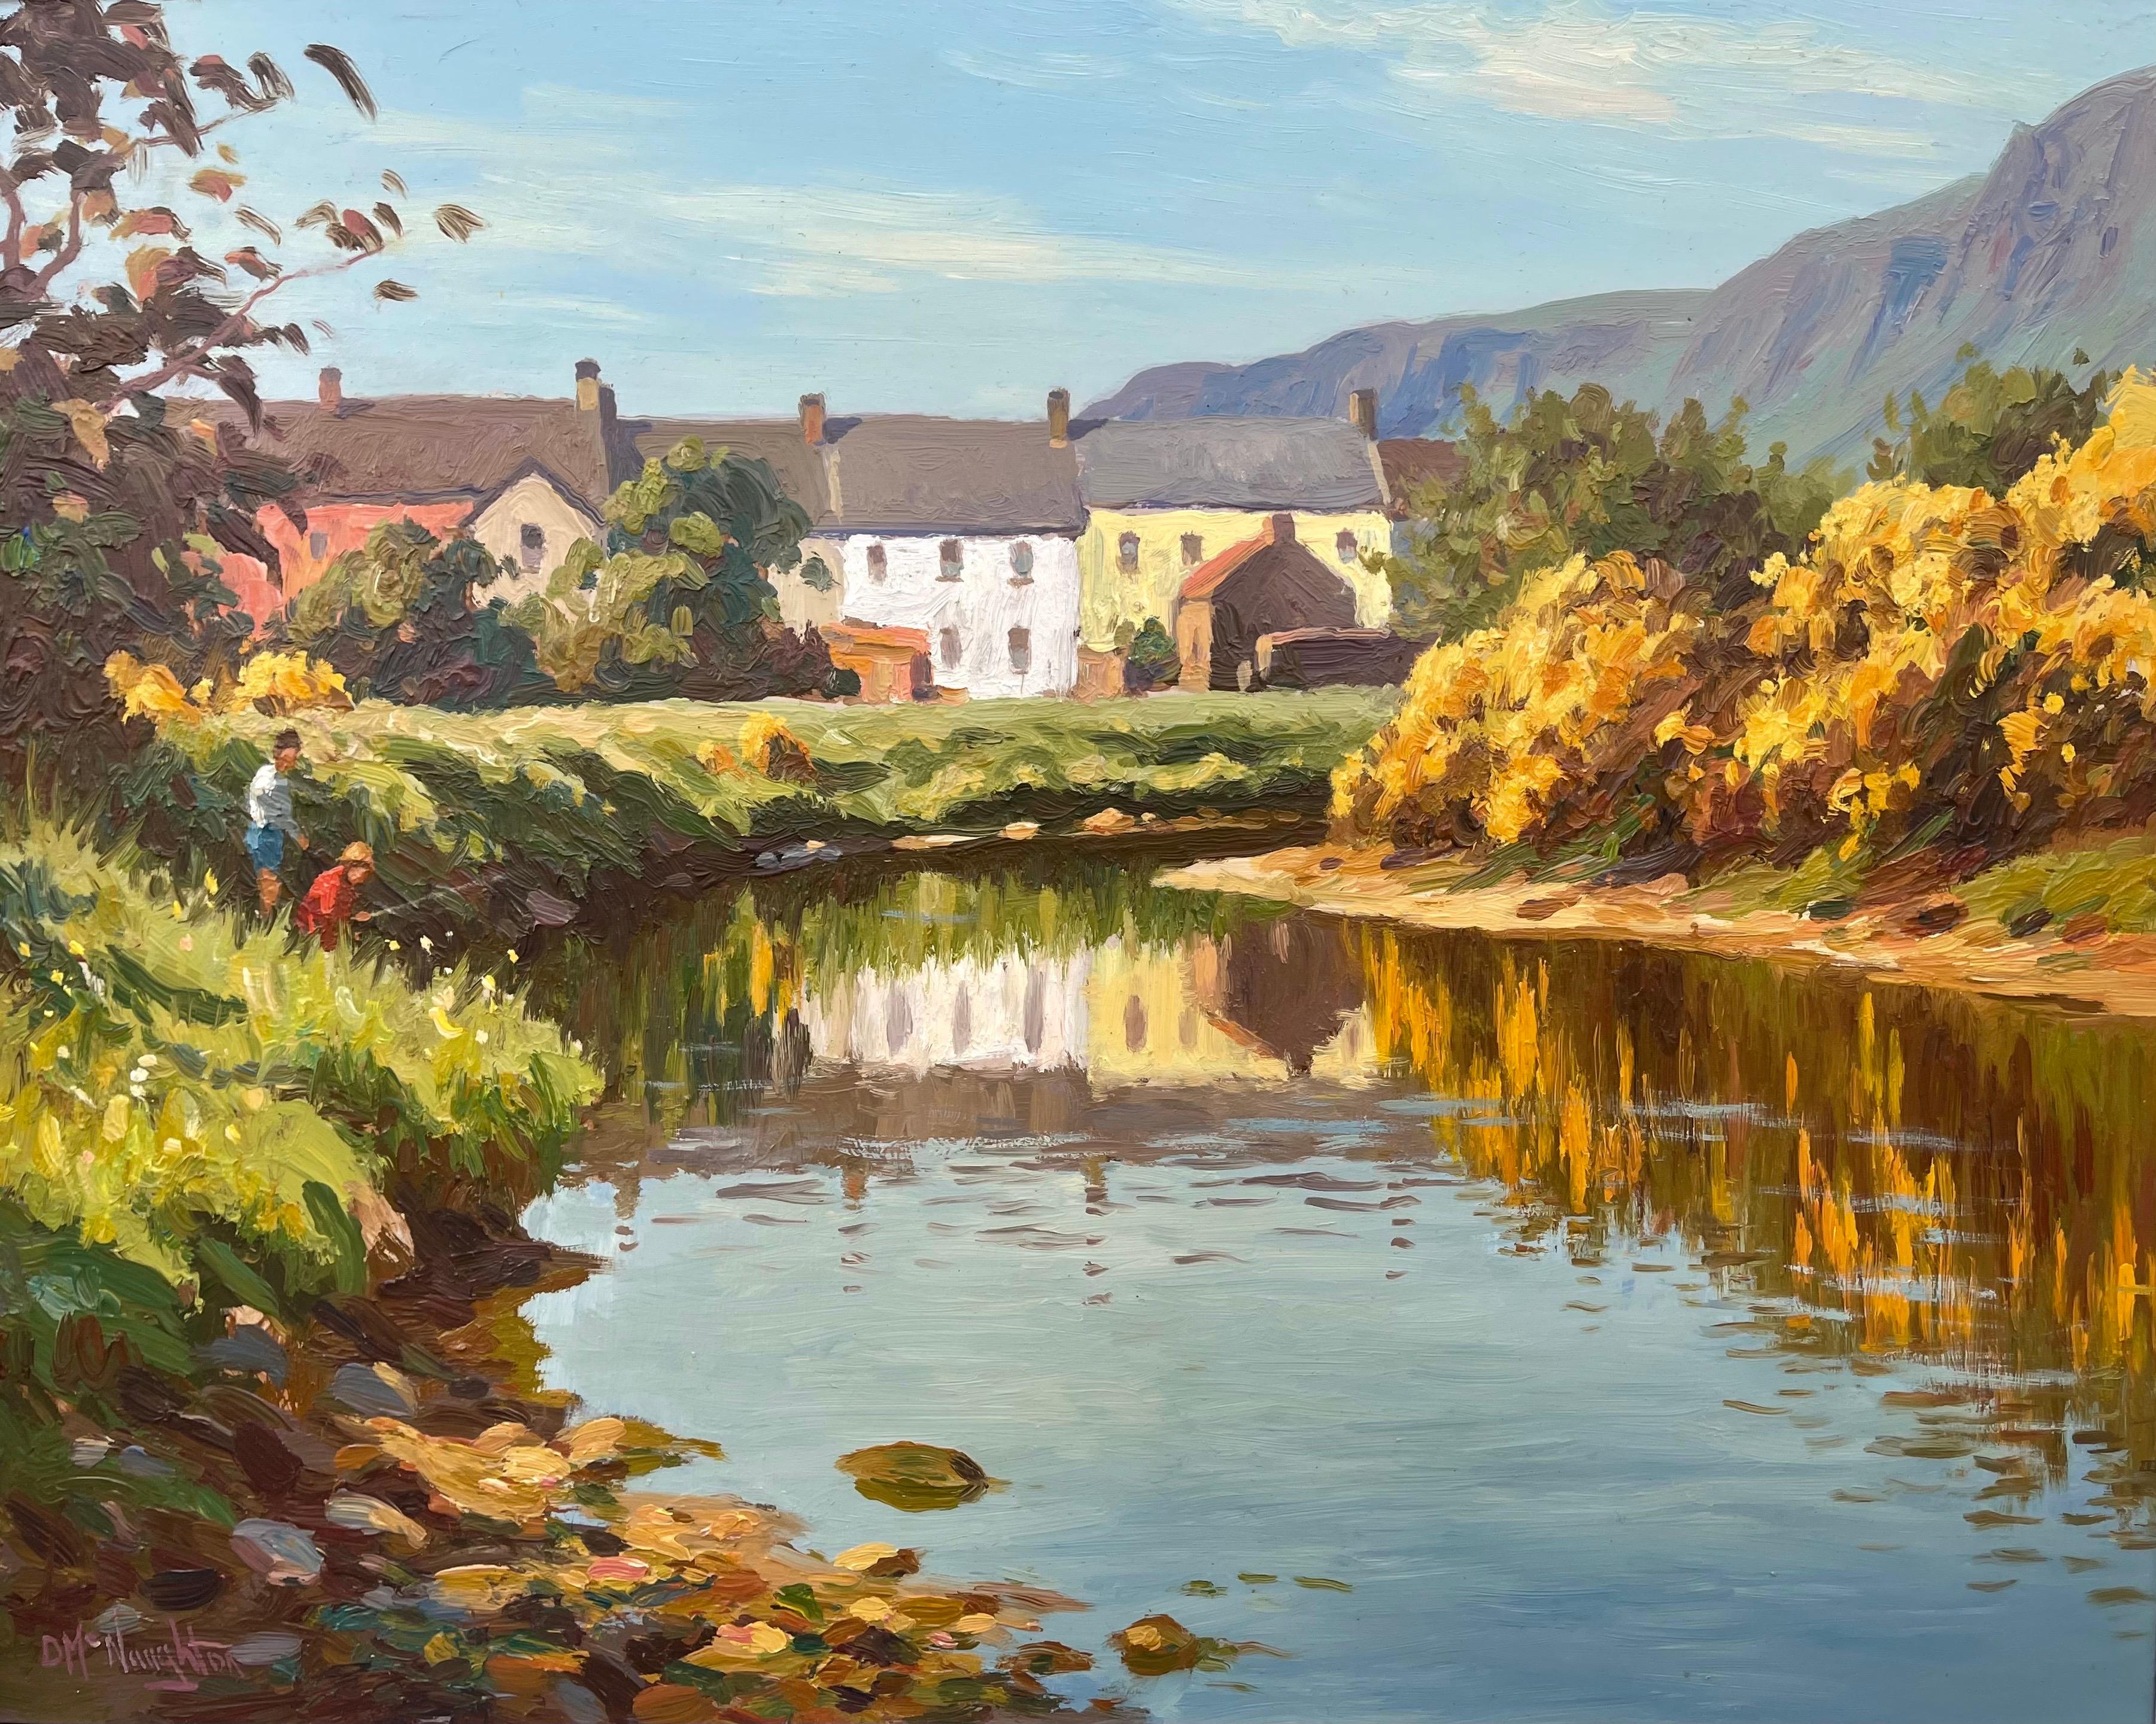 Fliegenfischer-Fluss-Szene in einem irischen Küstendorf von dem zeitgenössischen irischen Künstler Donal McNaughton.

Donal McNaughton wurde in den Glens of Antrim geboren, und da er sein Leben dort verbracht hat, dominieren der Ort und seine